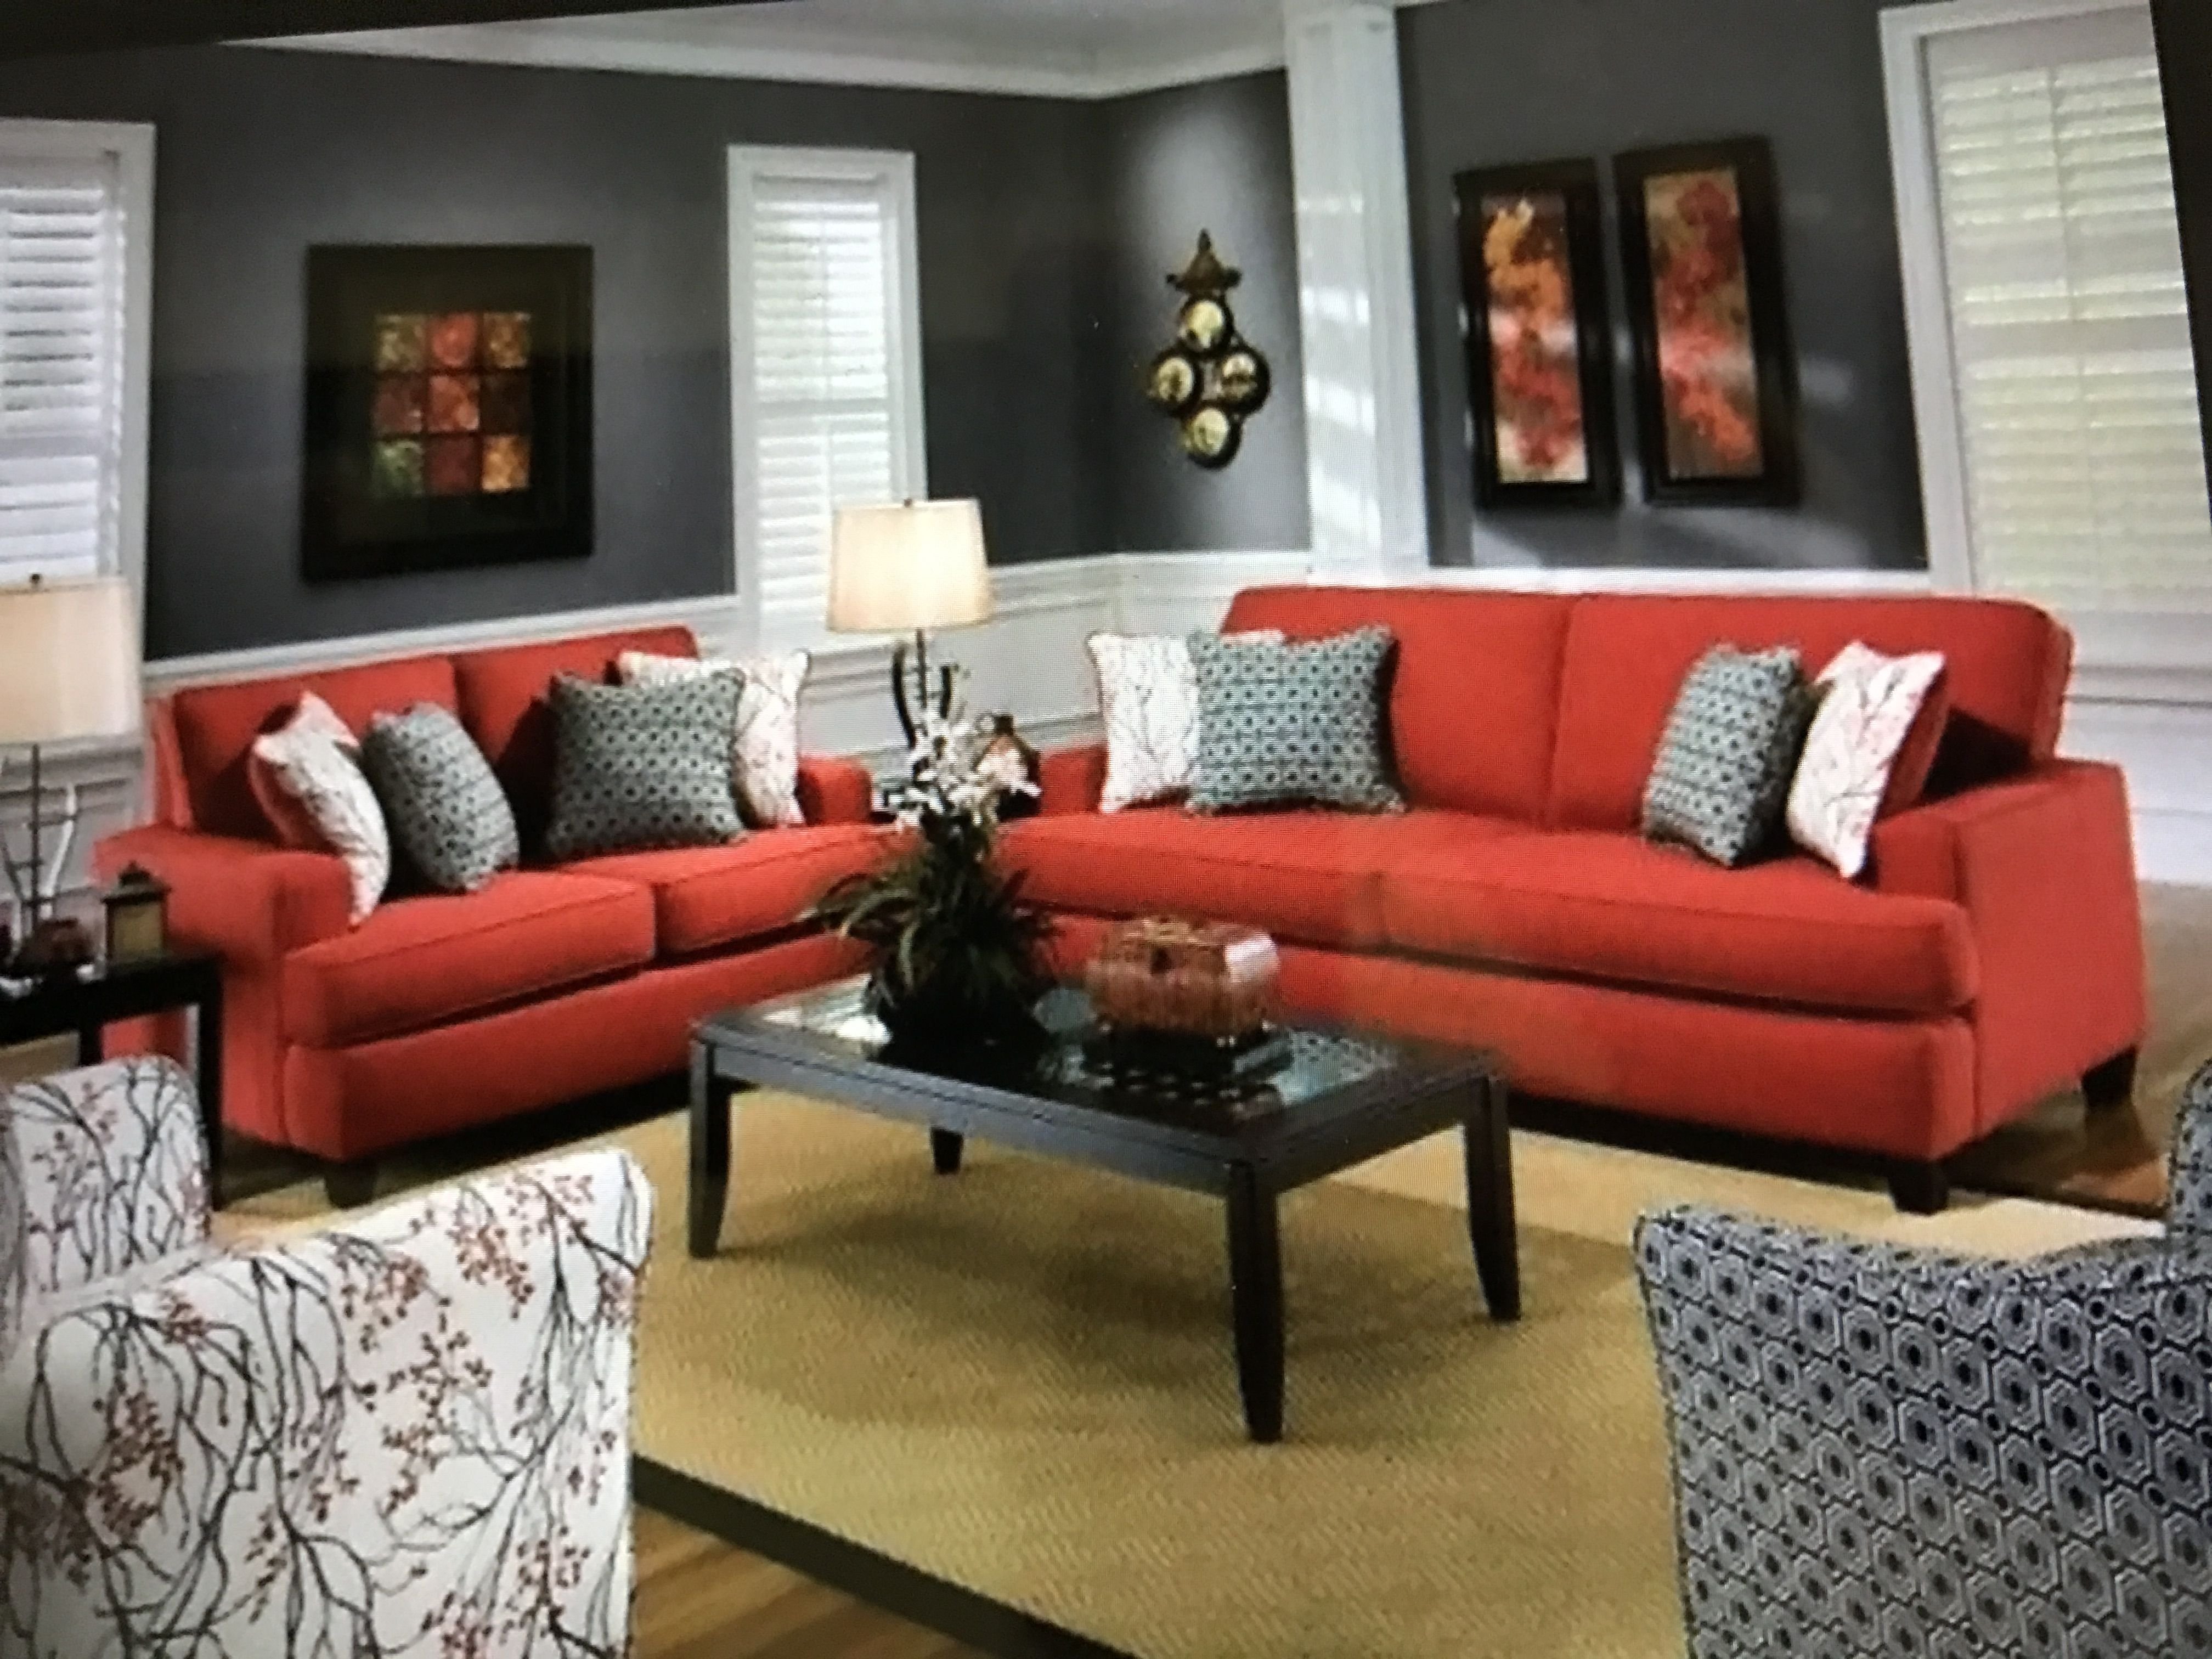 There are chairs in the living room. Красный диван. Диван в интерьере. Гостиная с красным диваном. Красный диван в интерьере гостиной.